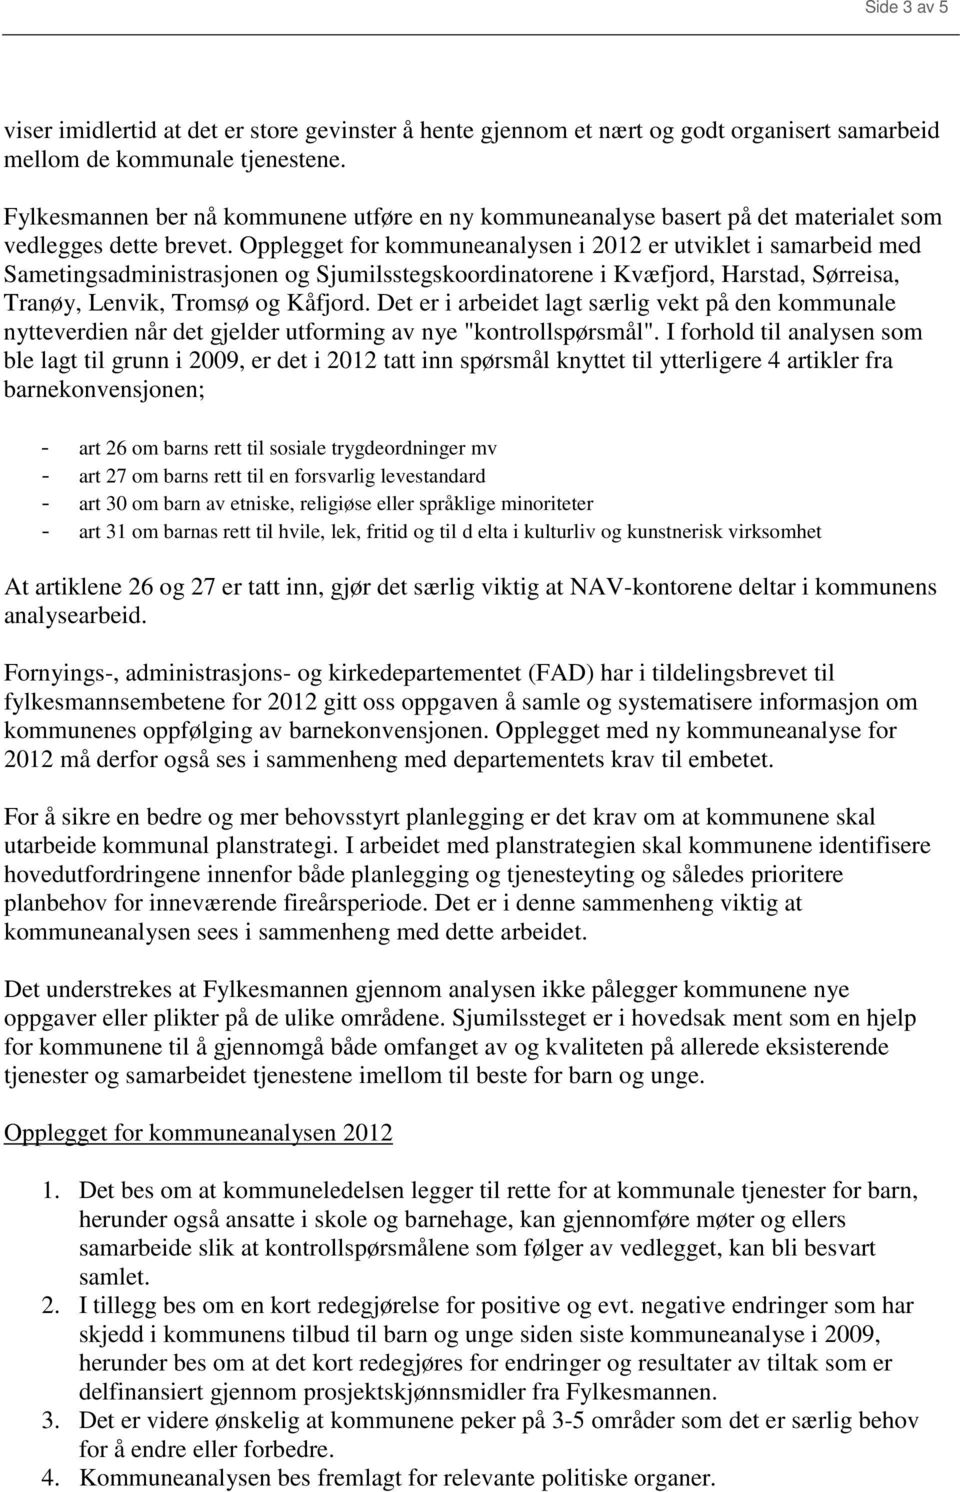 Opplegget for kommuneanalysen i 2012 er utviklet i samarbeid med Sametingsadministrasjonen og Sjumilsstegskoordinatorene i Kvæfjord, Harstad, Sørreisa, Tranøy, Lenvik, Tromsø og Kåfjord.